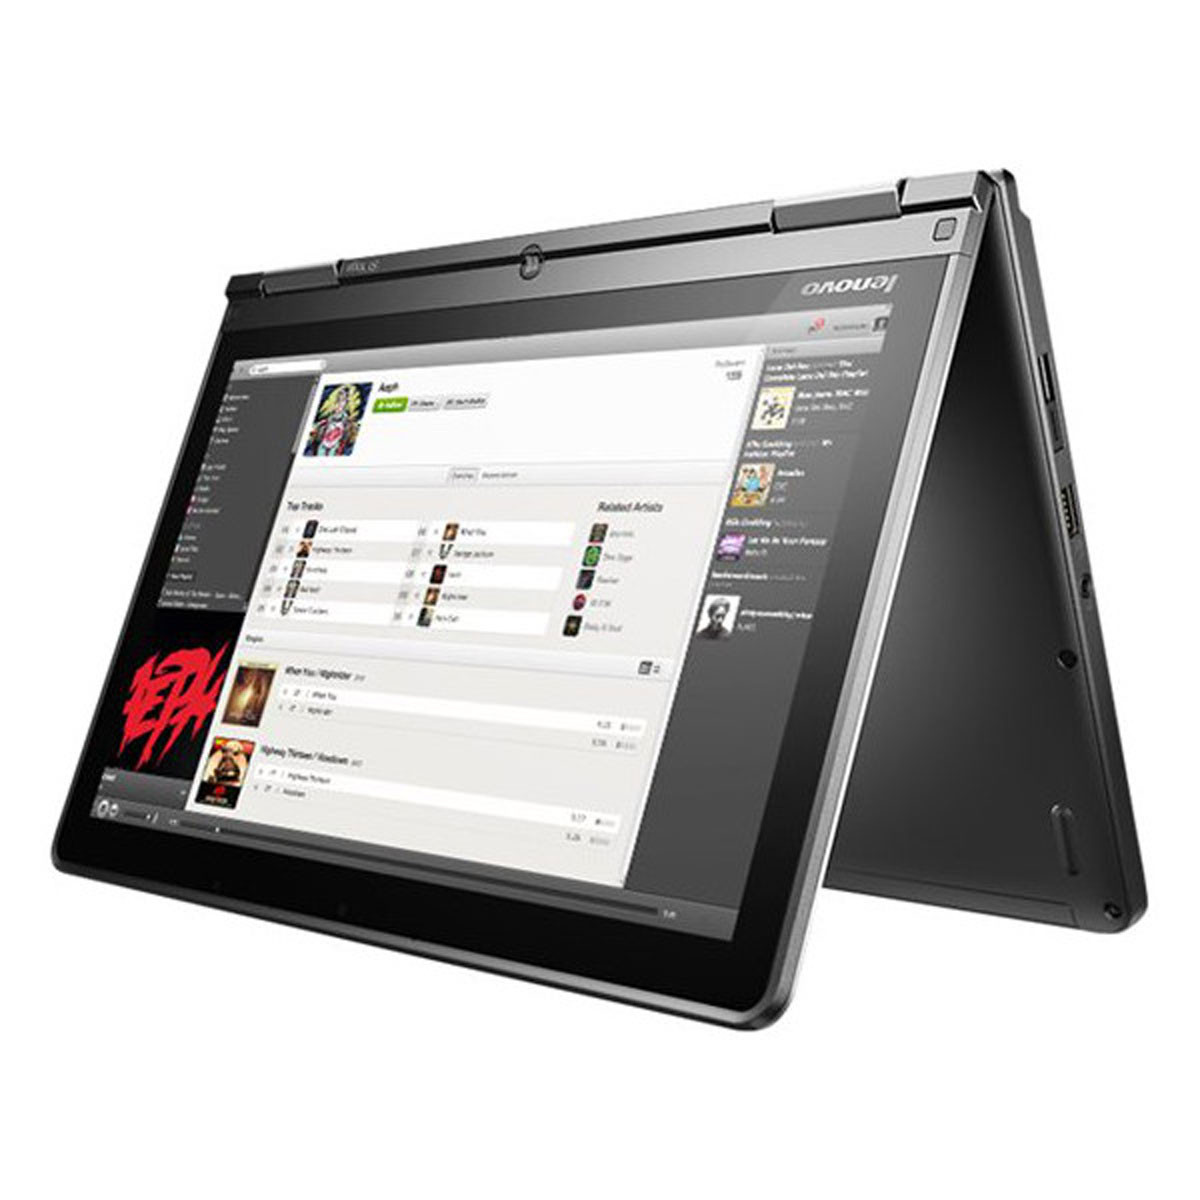 Lenovo ThinkPad Yoga 12 Touch Core i5-5300U 1,9 GHz 8GB RAM 500GB HDD WIN 10 PRO